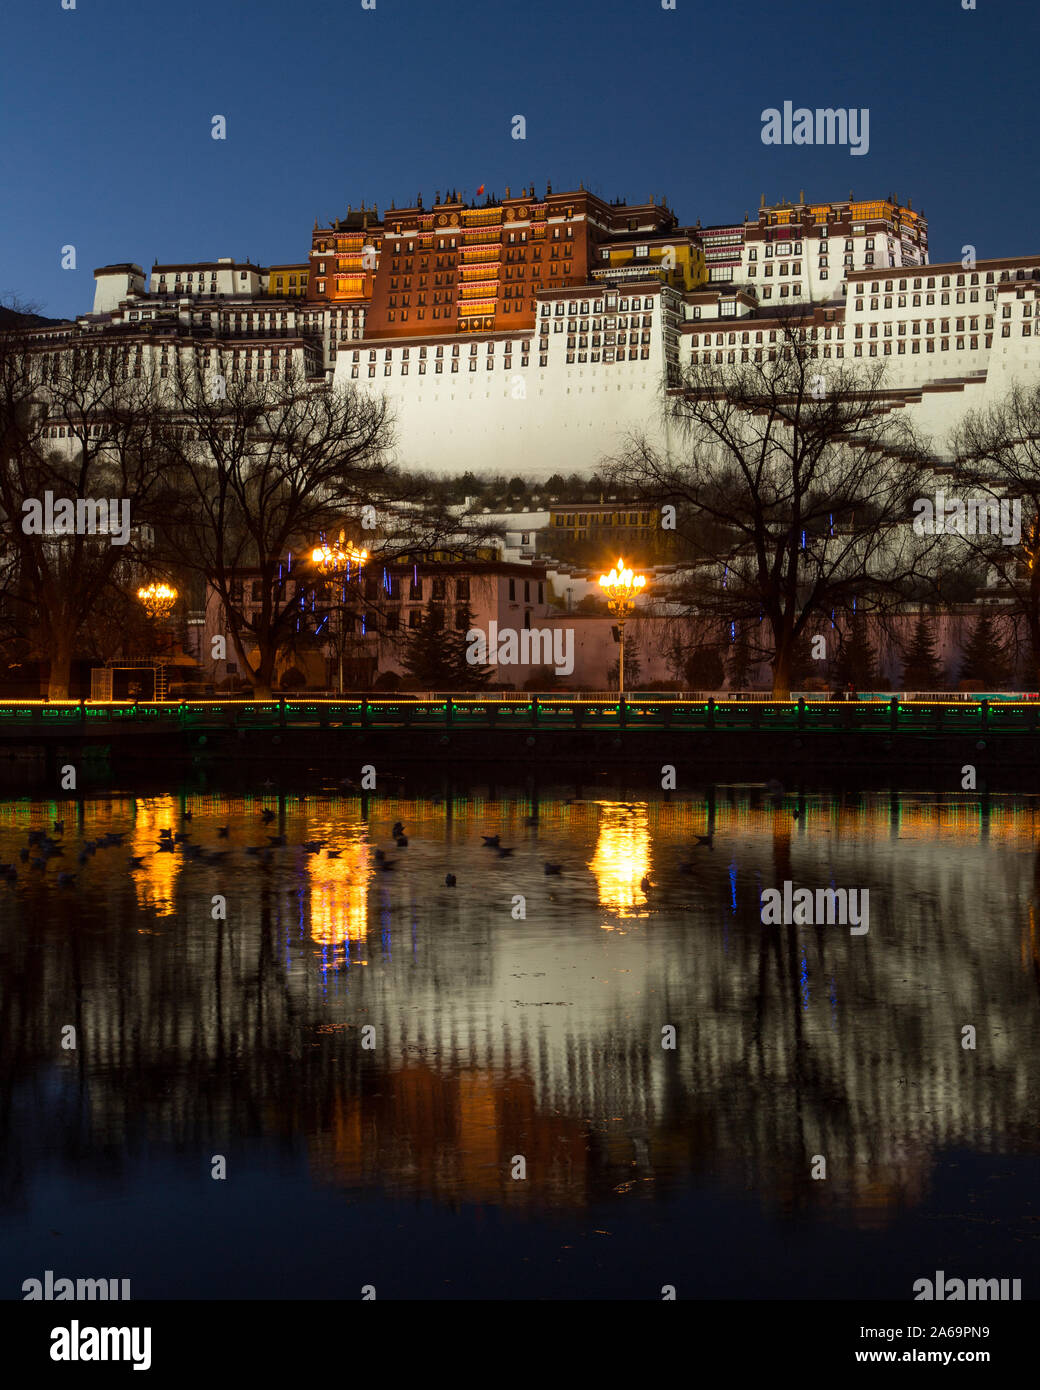 Riflessioni del Potala al crepuscolo serale a Lhasa, in Tibet. Ex palazzo d'inverno del Dalai Lama e ora un sito Patrimonio Mondiale dell'UNESCO. Foto Stock